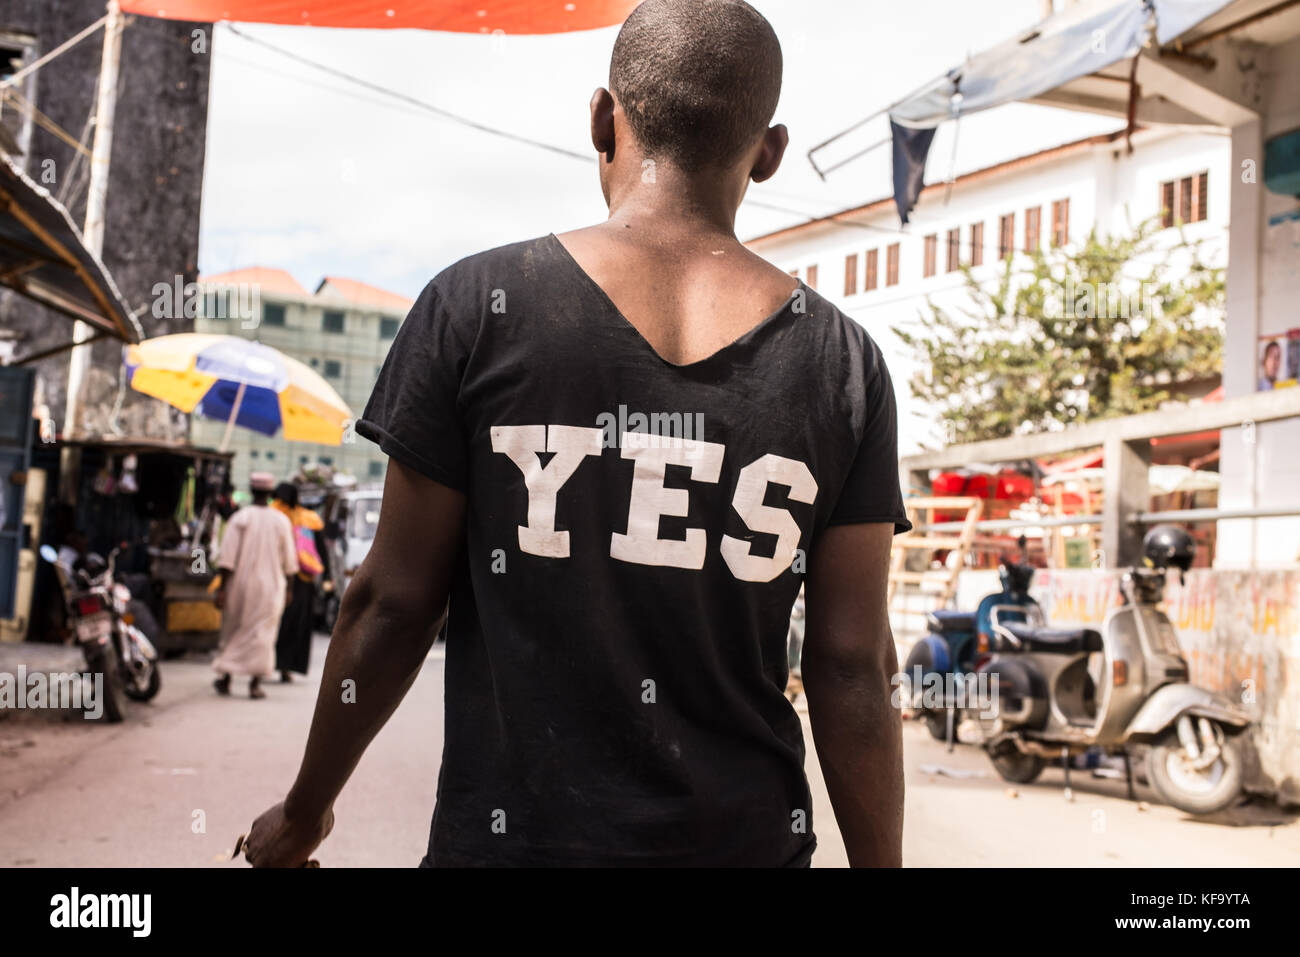 African uomo a camminare su una strada di mercato fotografato da dietro indossare una t-shirt nera con sì scritto in bianco le lettere maiuscole sulla sua schiena. Foto Stock